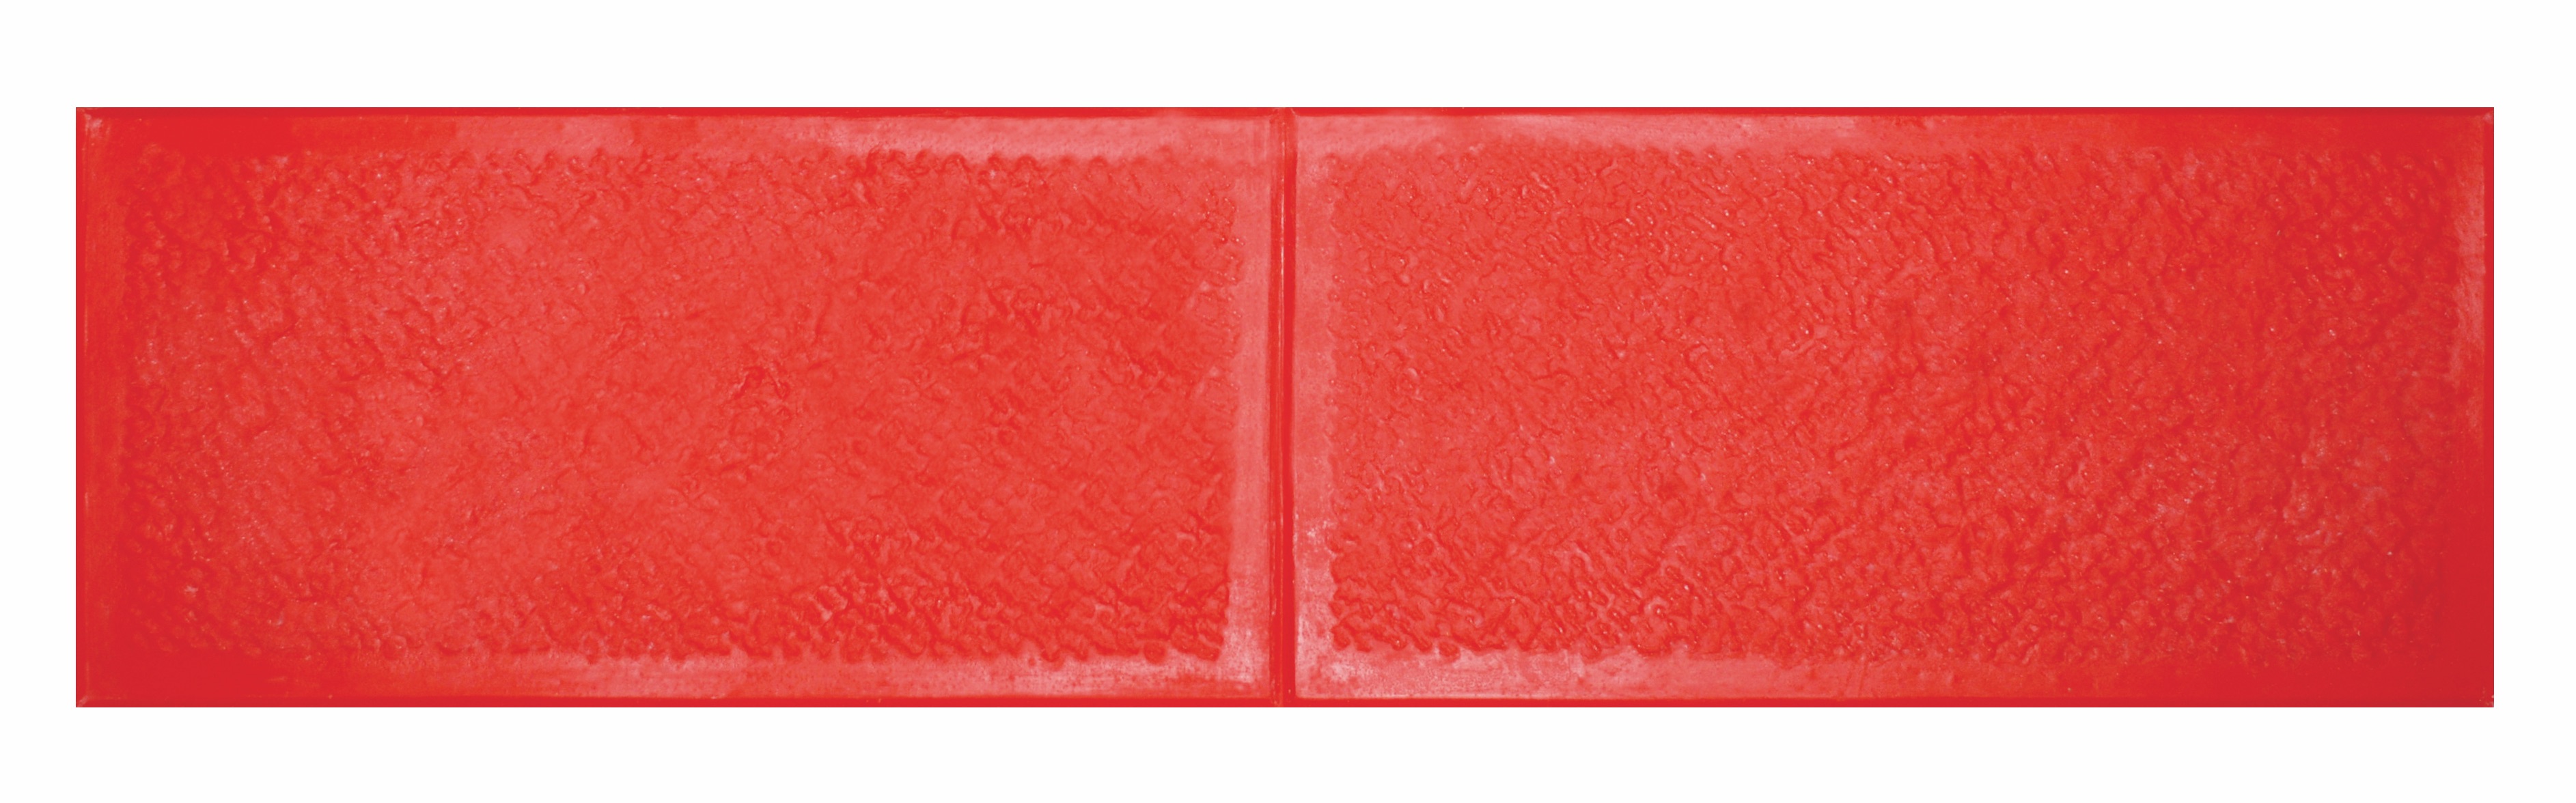 Stampo Bushed Stone (Travertino) per pavimento stampato